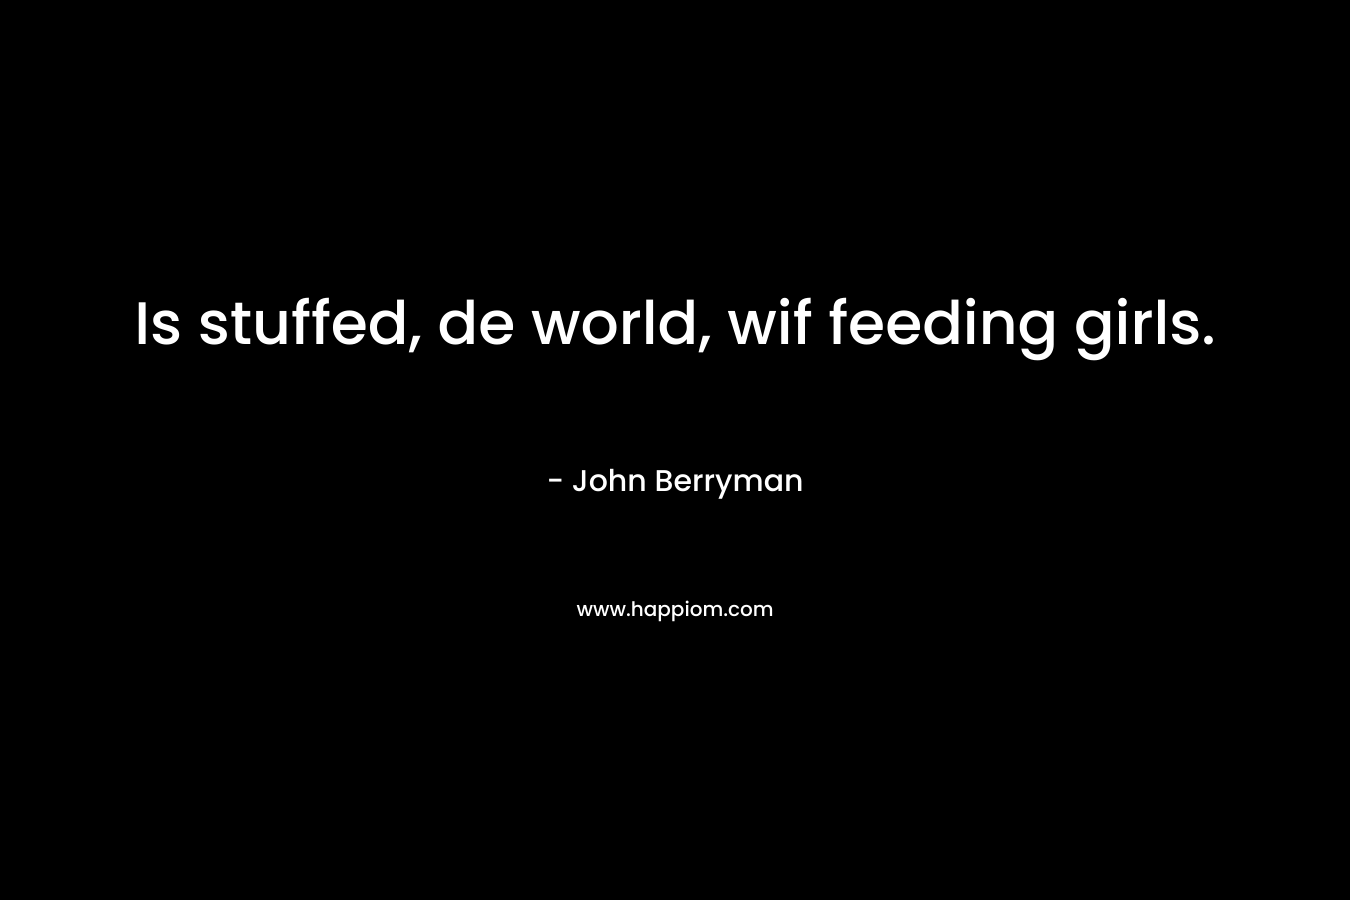 Is stuffed, de world, wif feeding girls. – John Berryman